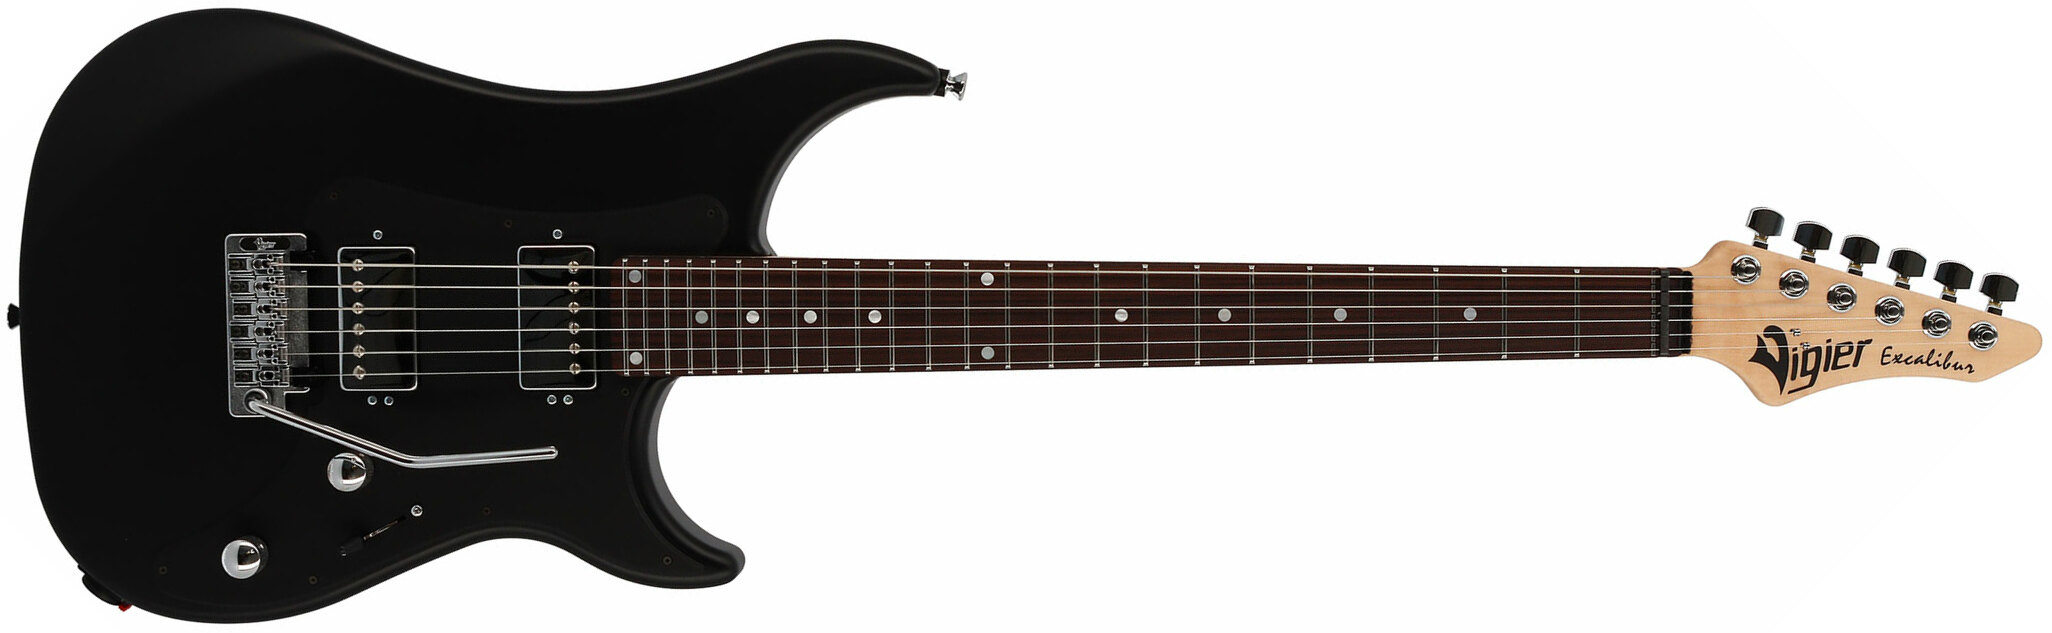 Vigier Excalibur Indus 2h Trem Rw - Black Matte - Double Cut E-Gitarre - Main picture